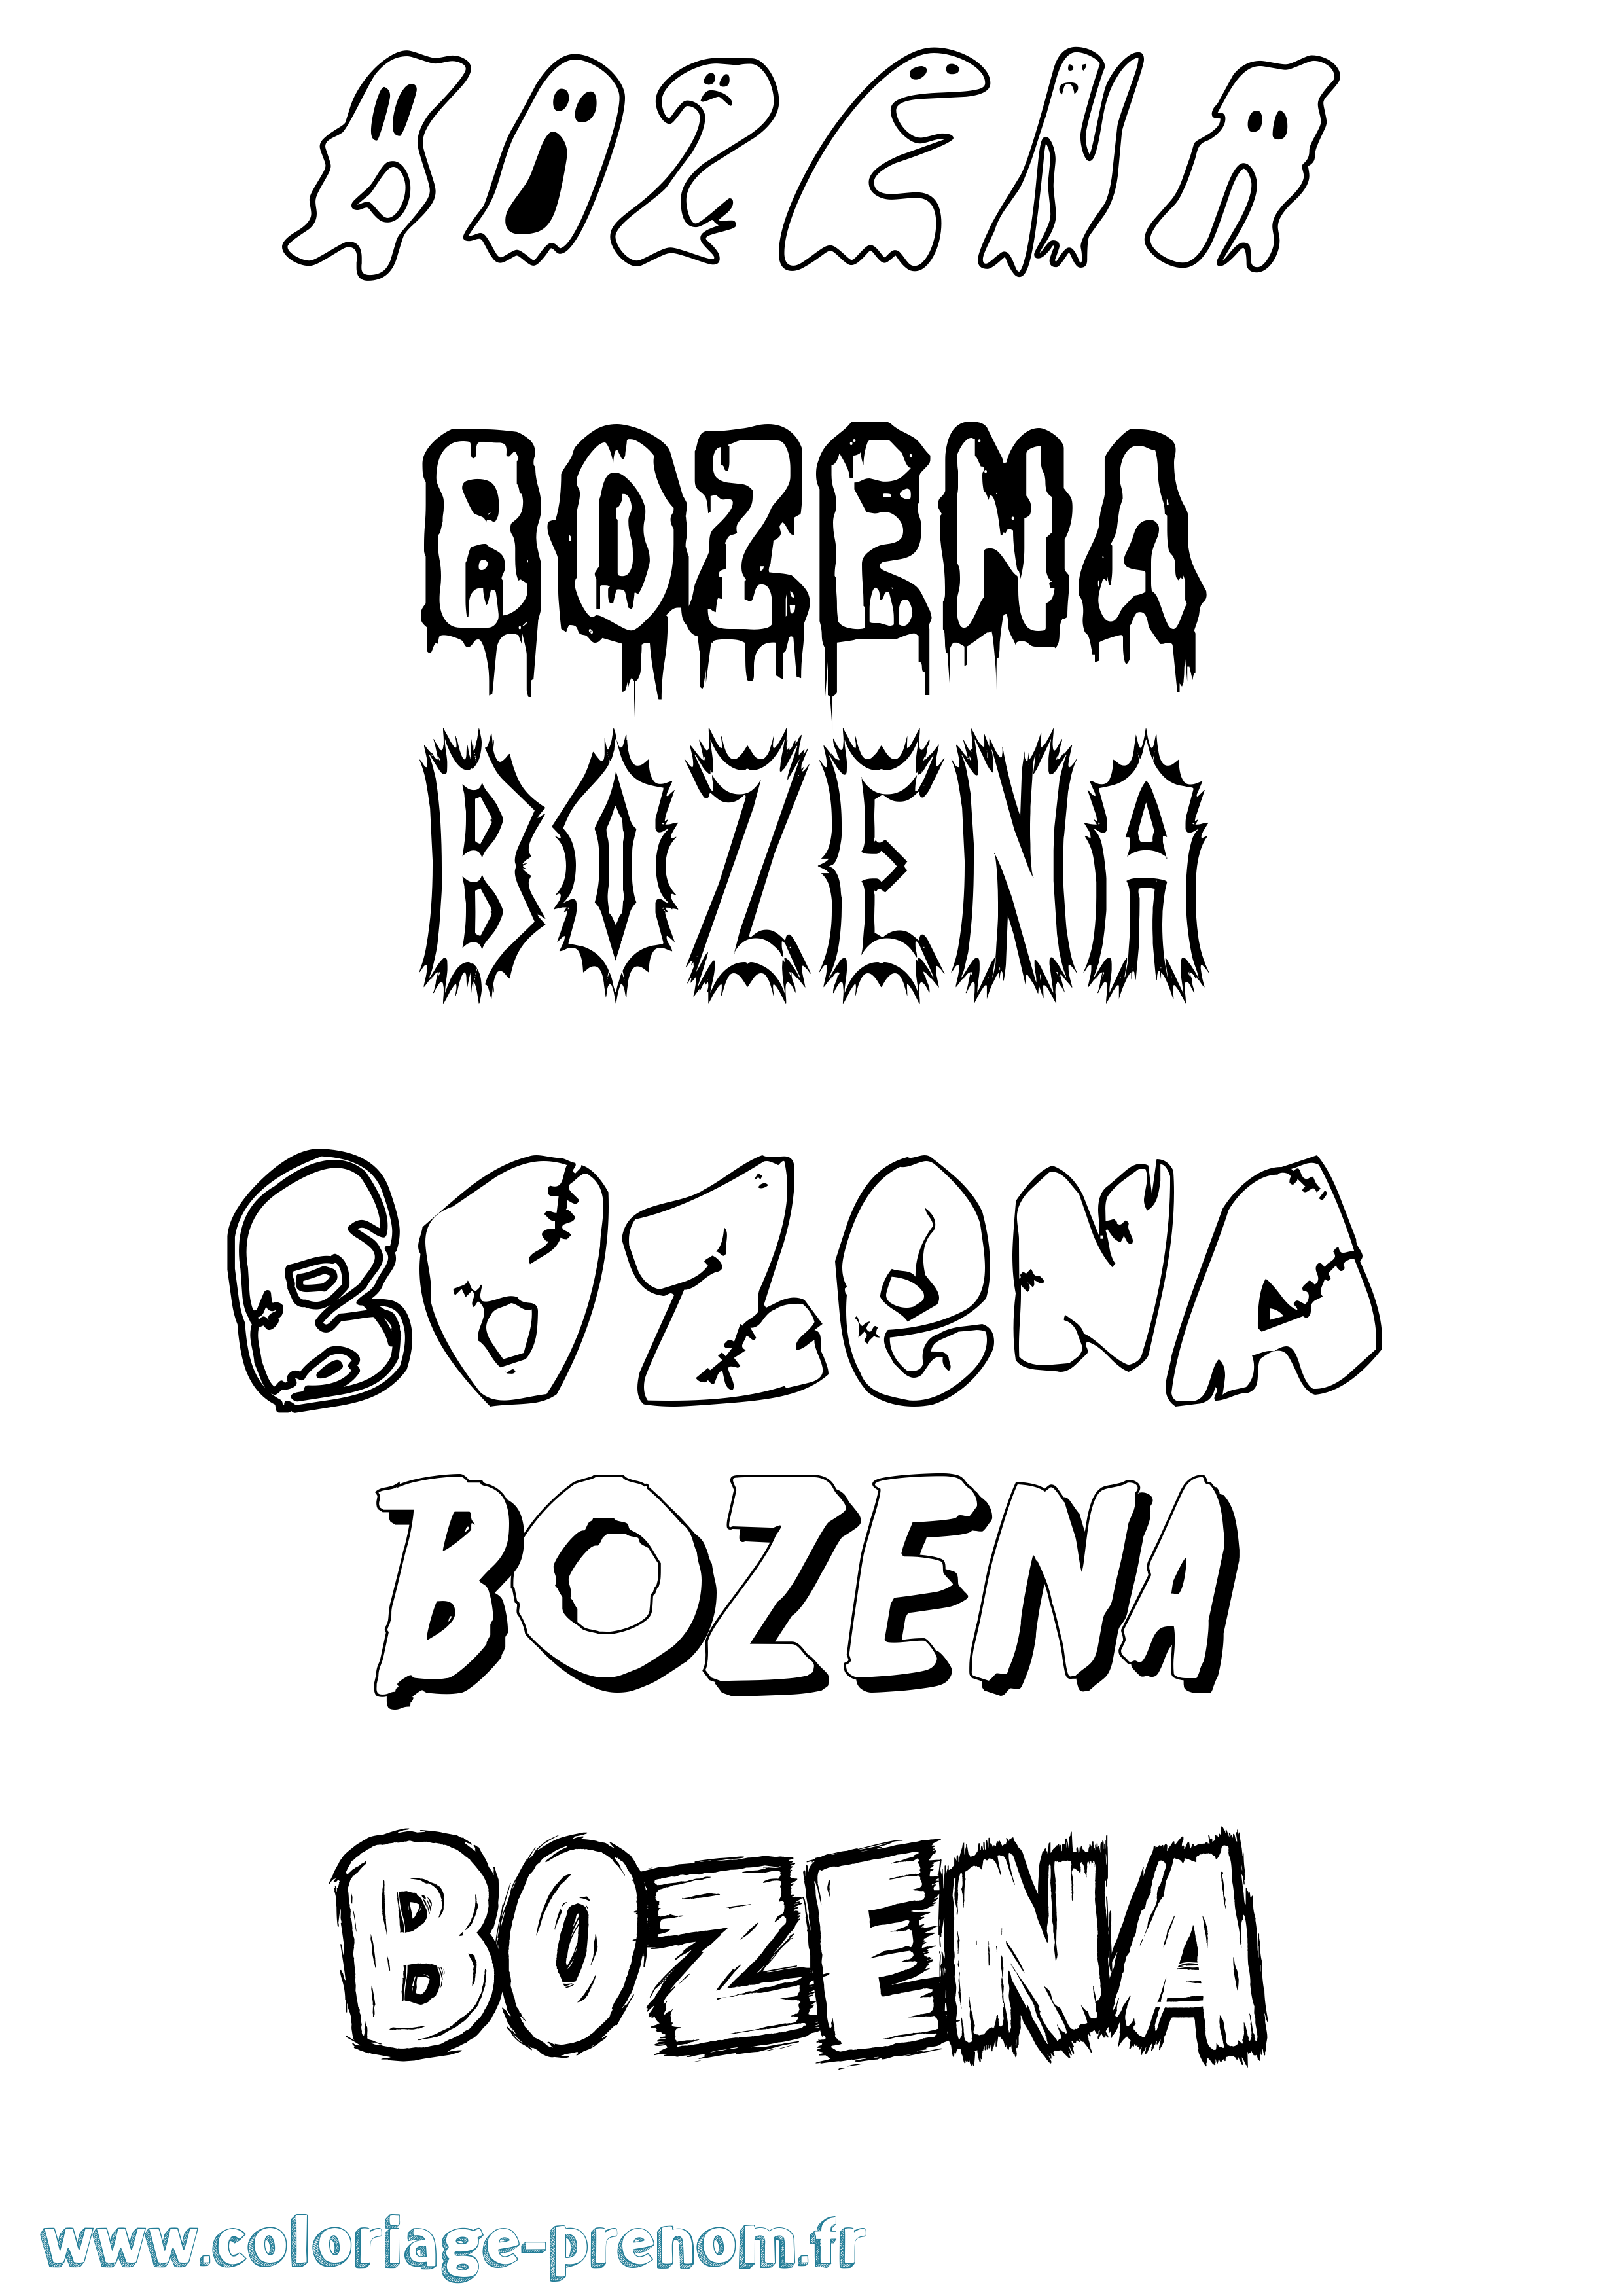 Coloriage prénom Bozena Frisson